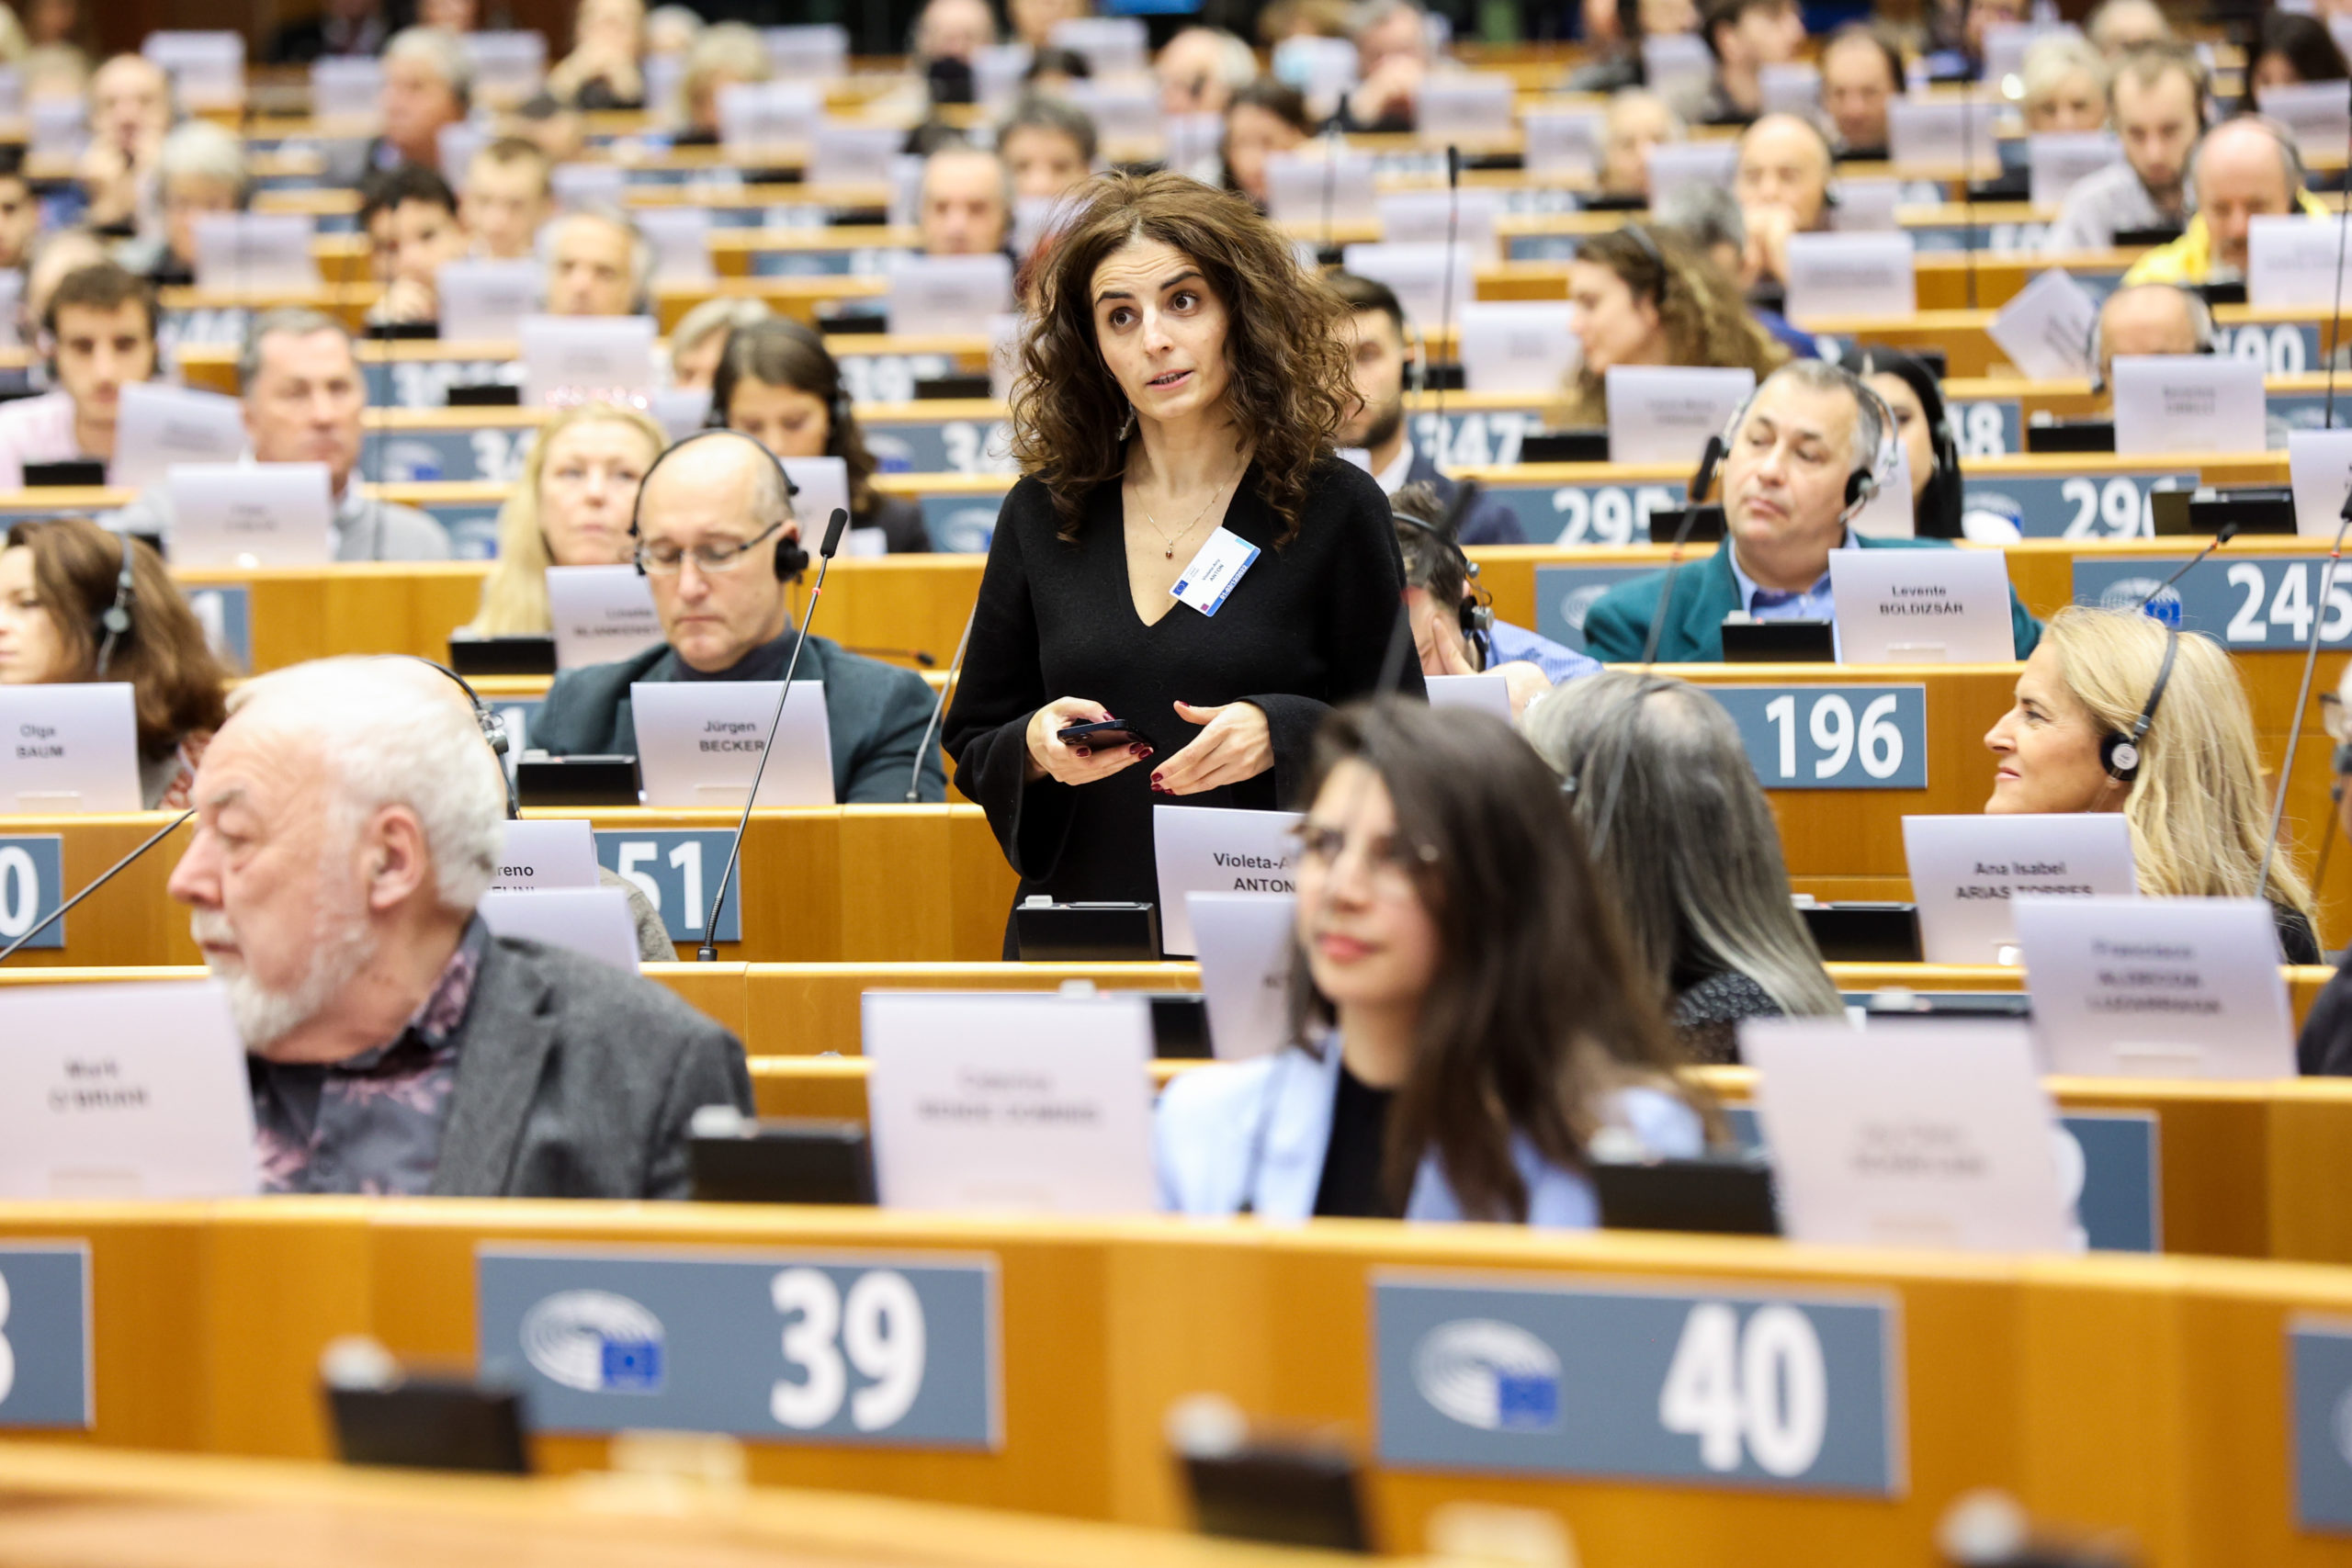 Διάσκεψη για το Μέλλον της Ευρώπης – Η συνέχεια: Μεταρρυθμίσεις, προοπτική Συνέλευσης για αναθεώρηση – Οι πολίτες απαιτούν περισσότερα